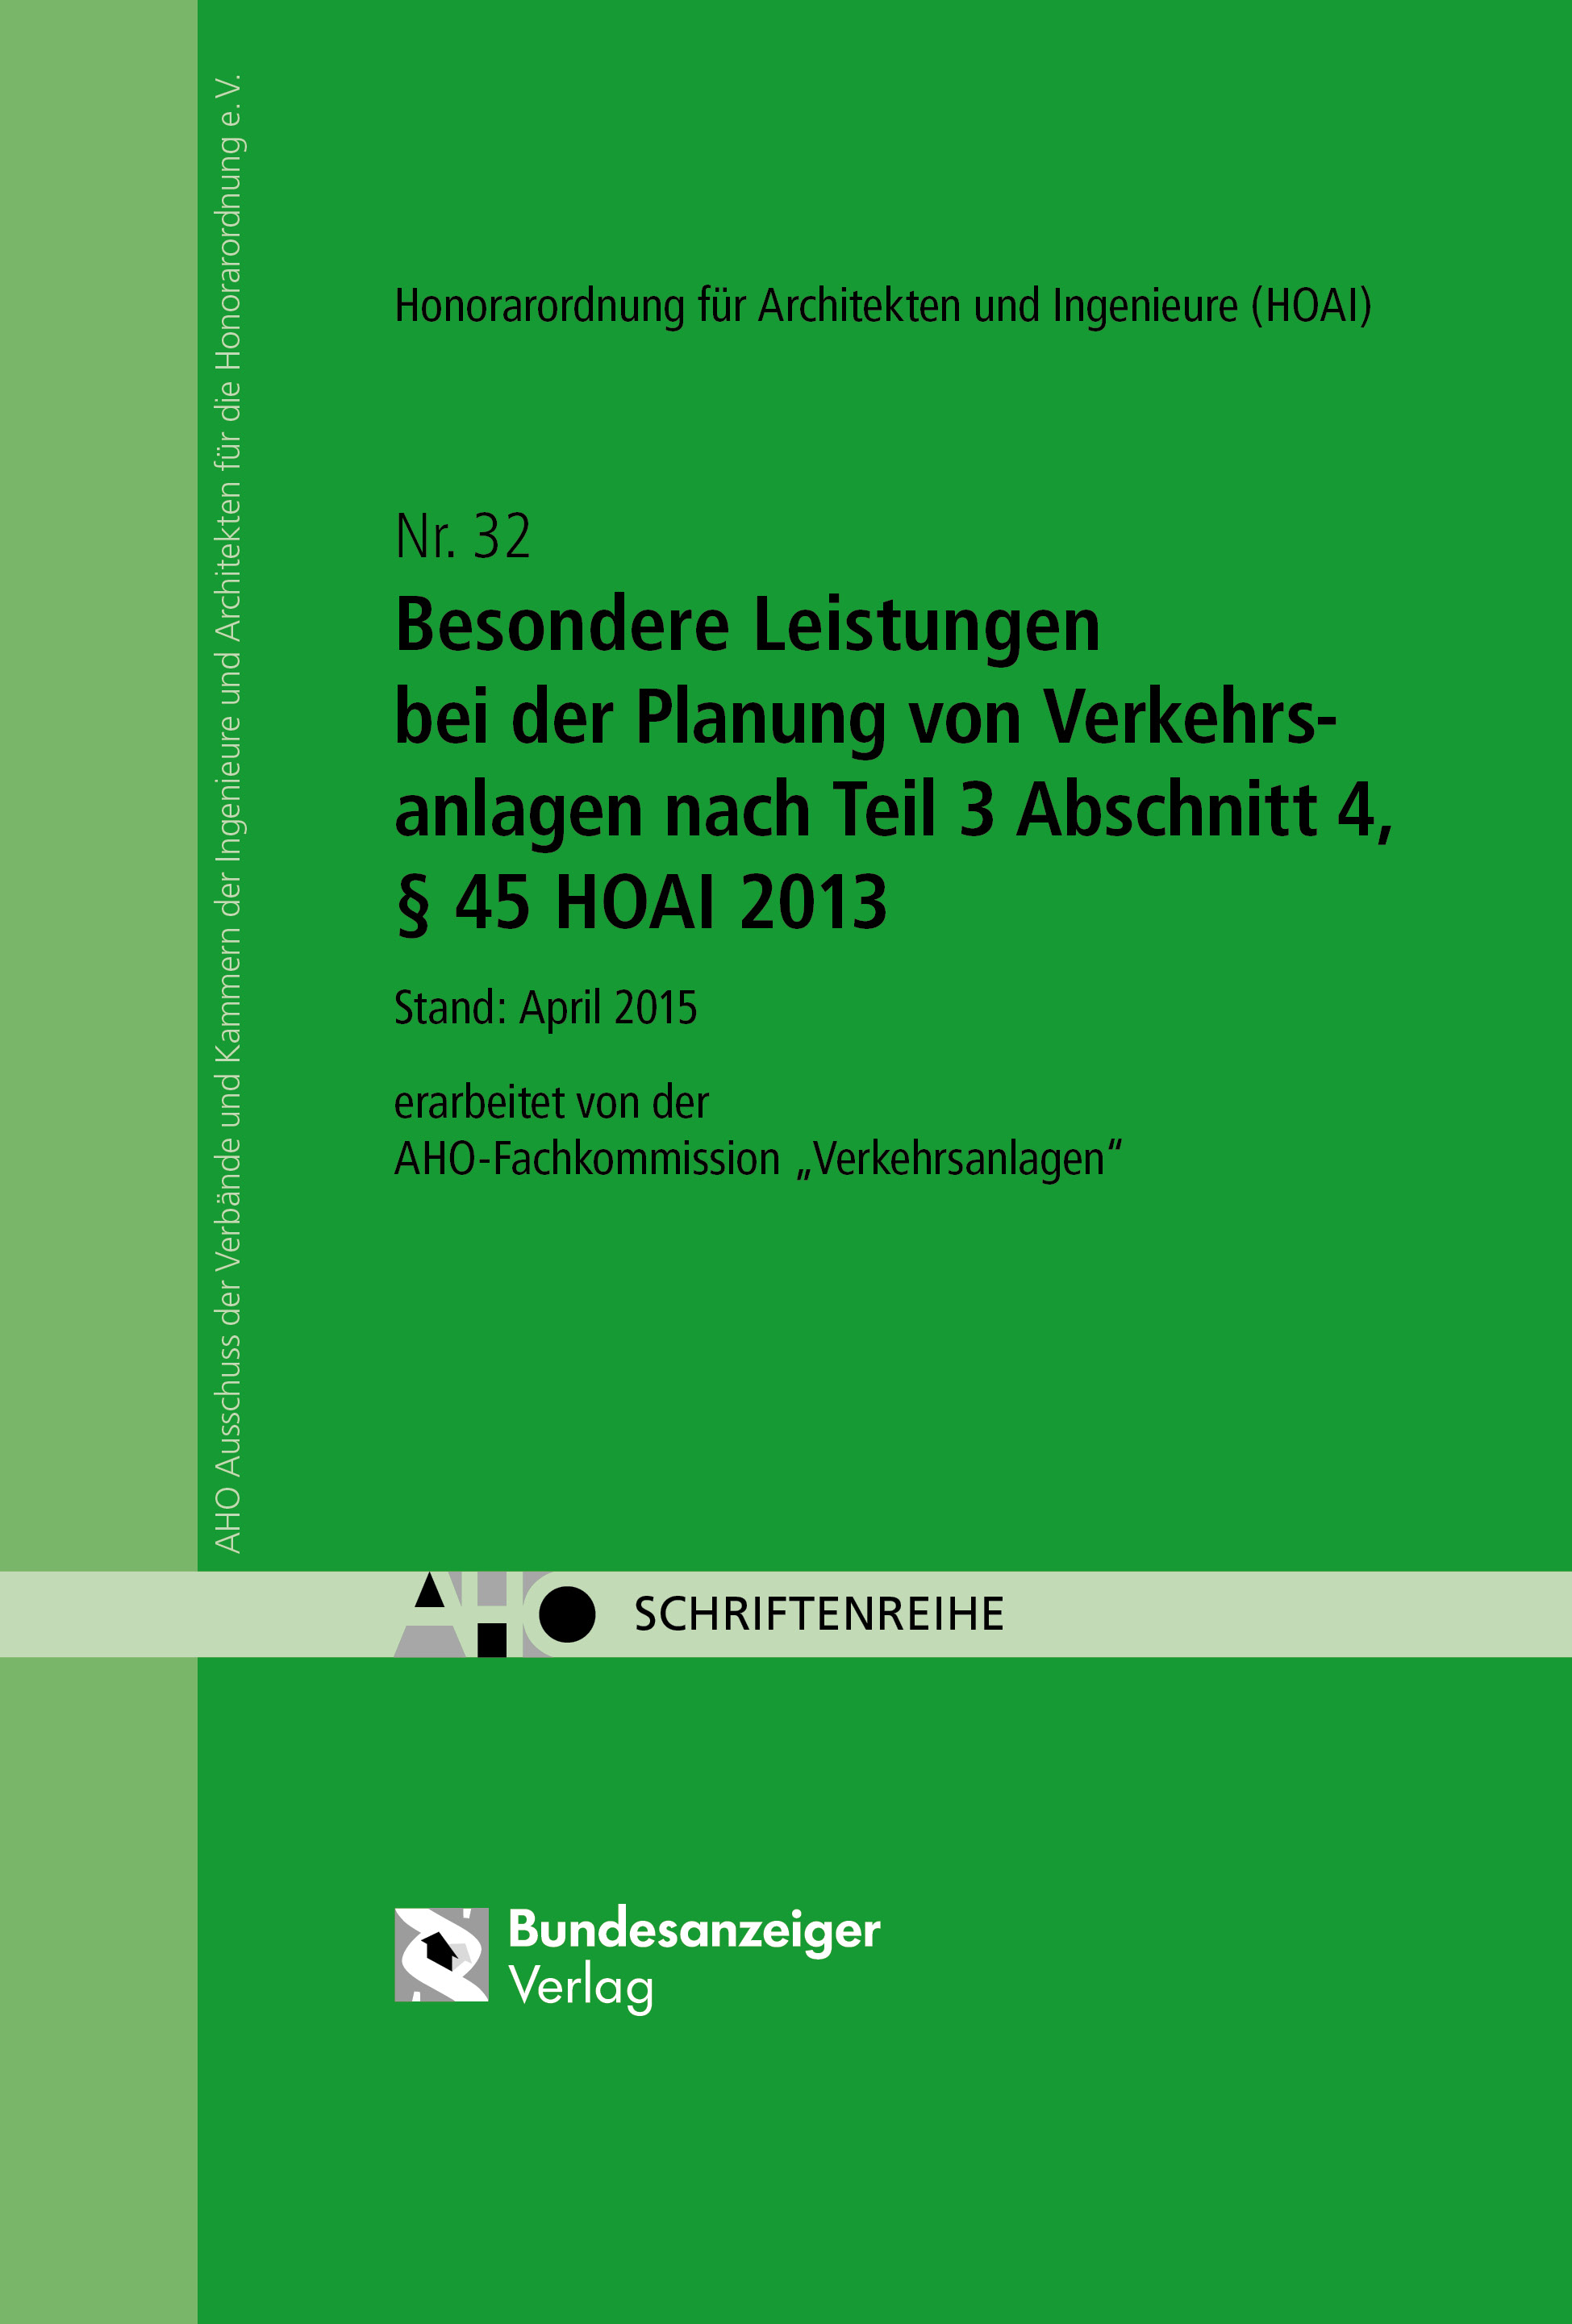 Besondere Leistungen bei der Planung von Verkehrsanlagen nach Teil 3 Abschnitt 4, § 45 HOAI 2013